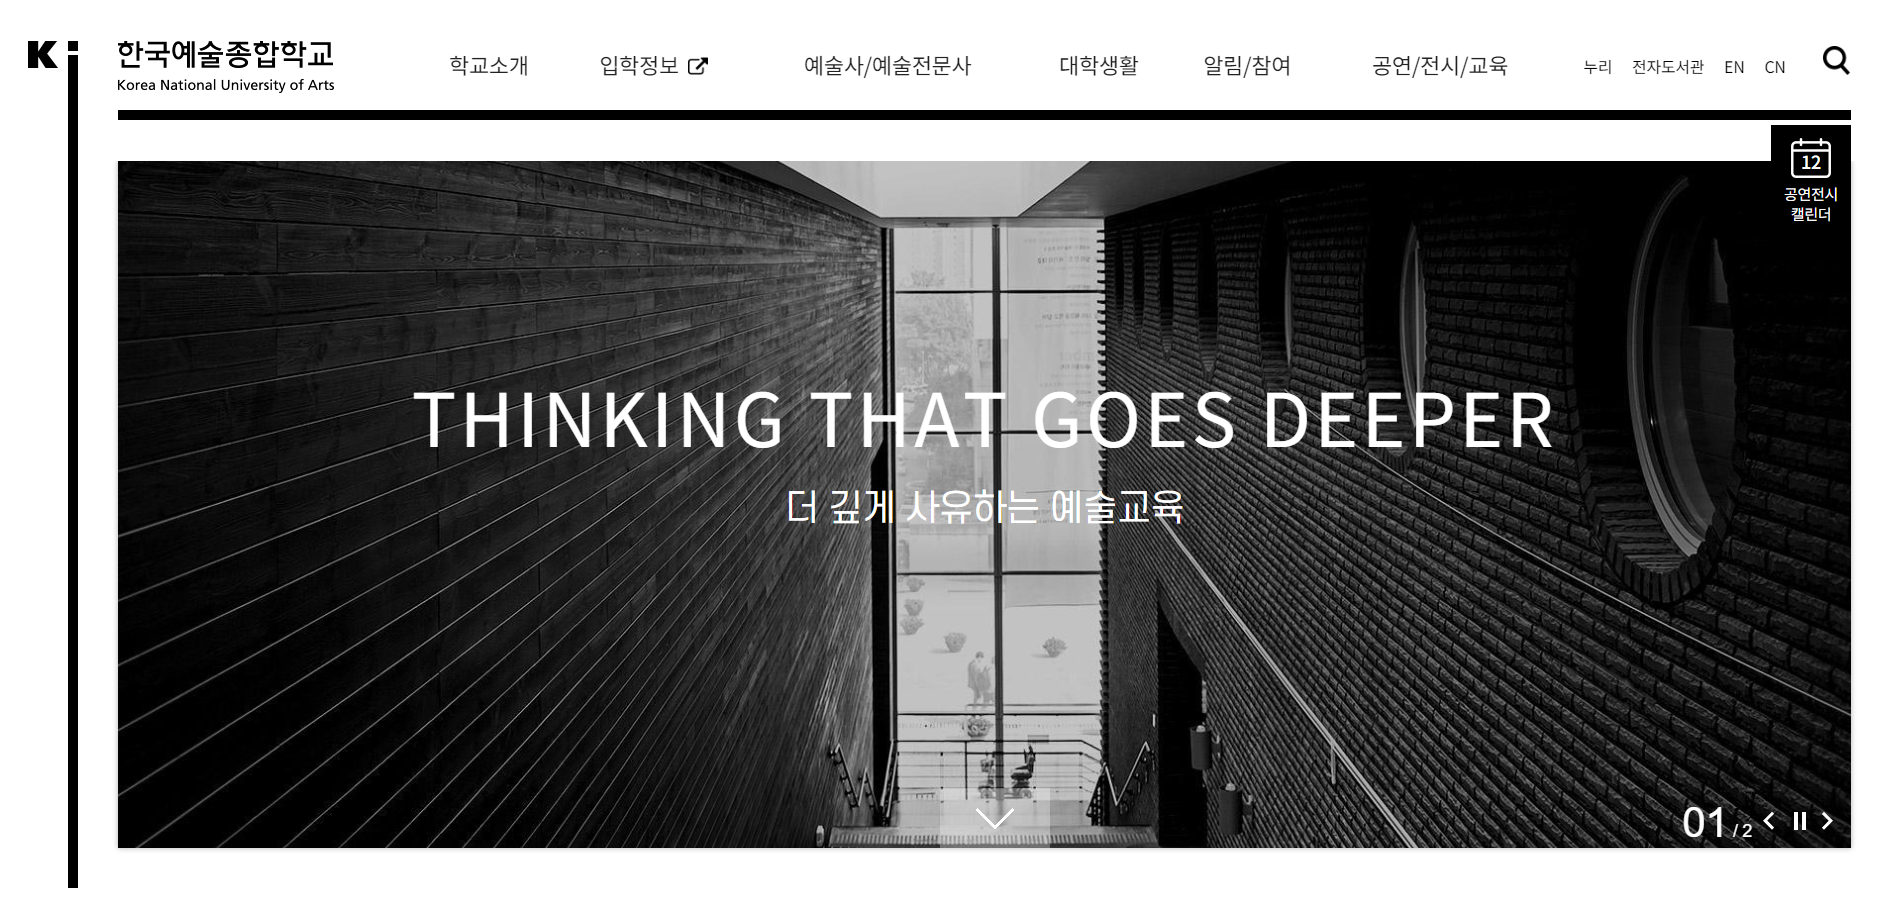 한국예술종합학교 홈페이지 스크릿샷